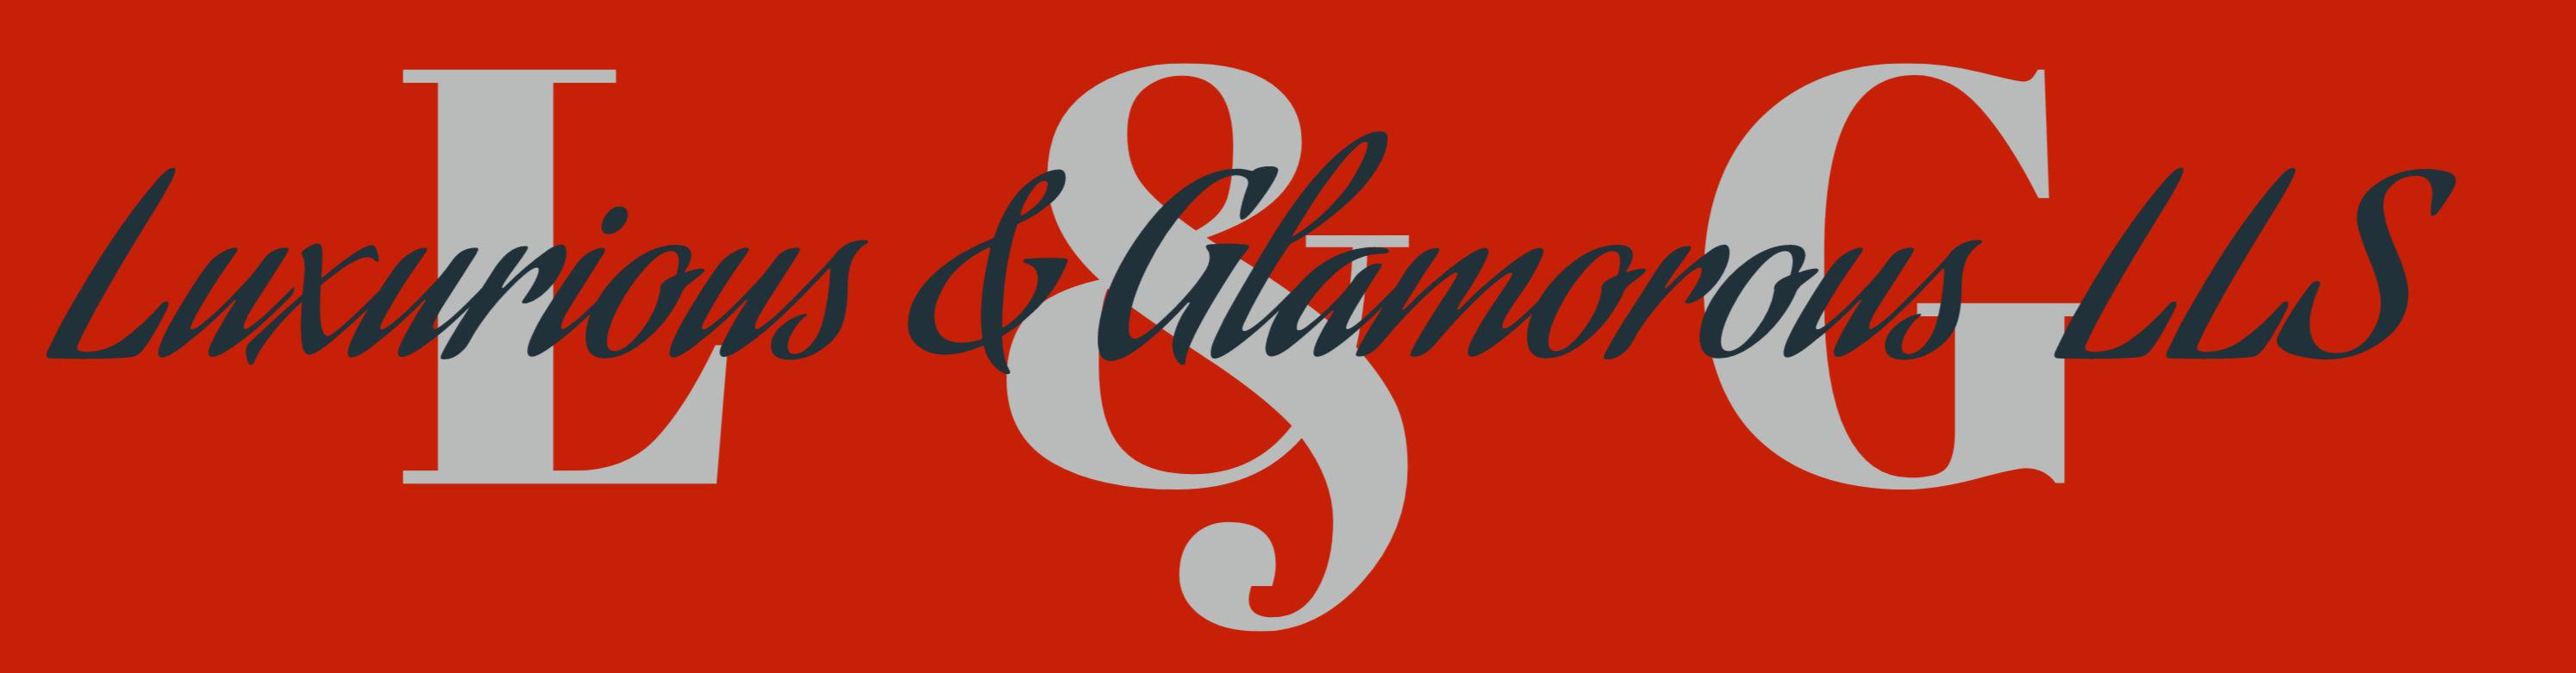 Luxurious & Glamorous Logo